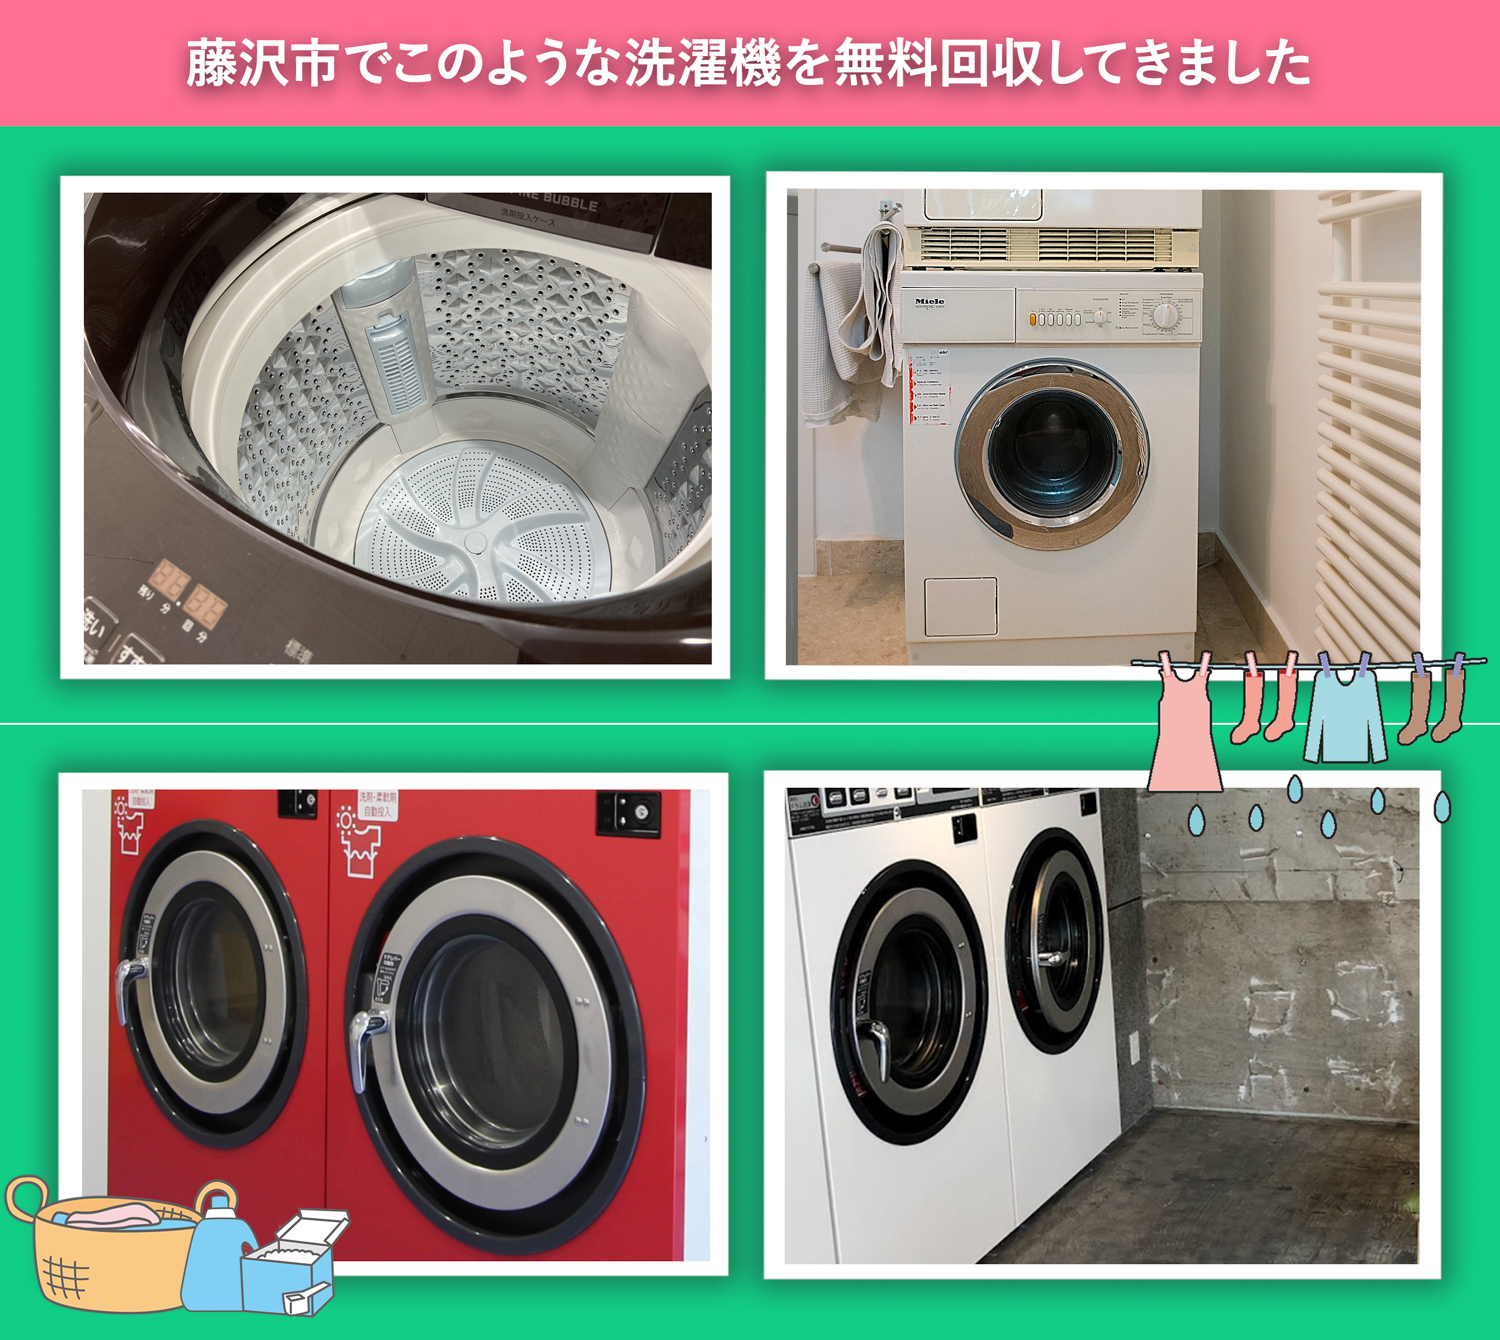 藤沢市でこのような洗濯機を無料回収してきました。